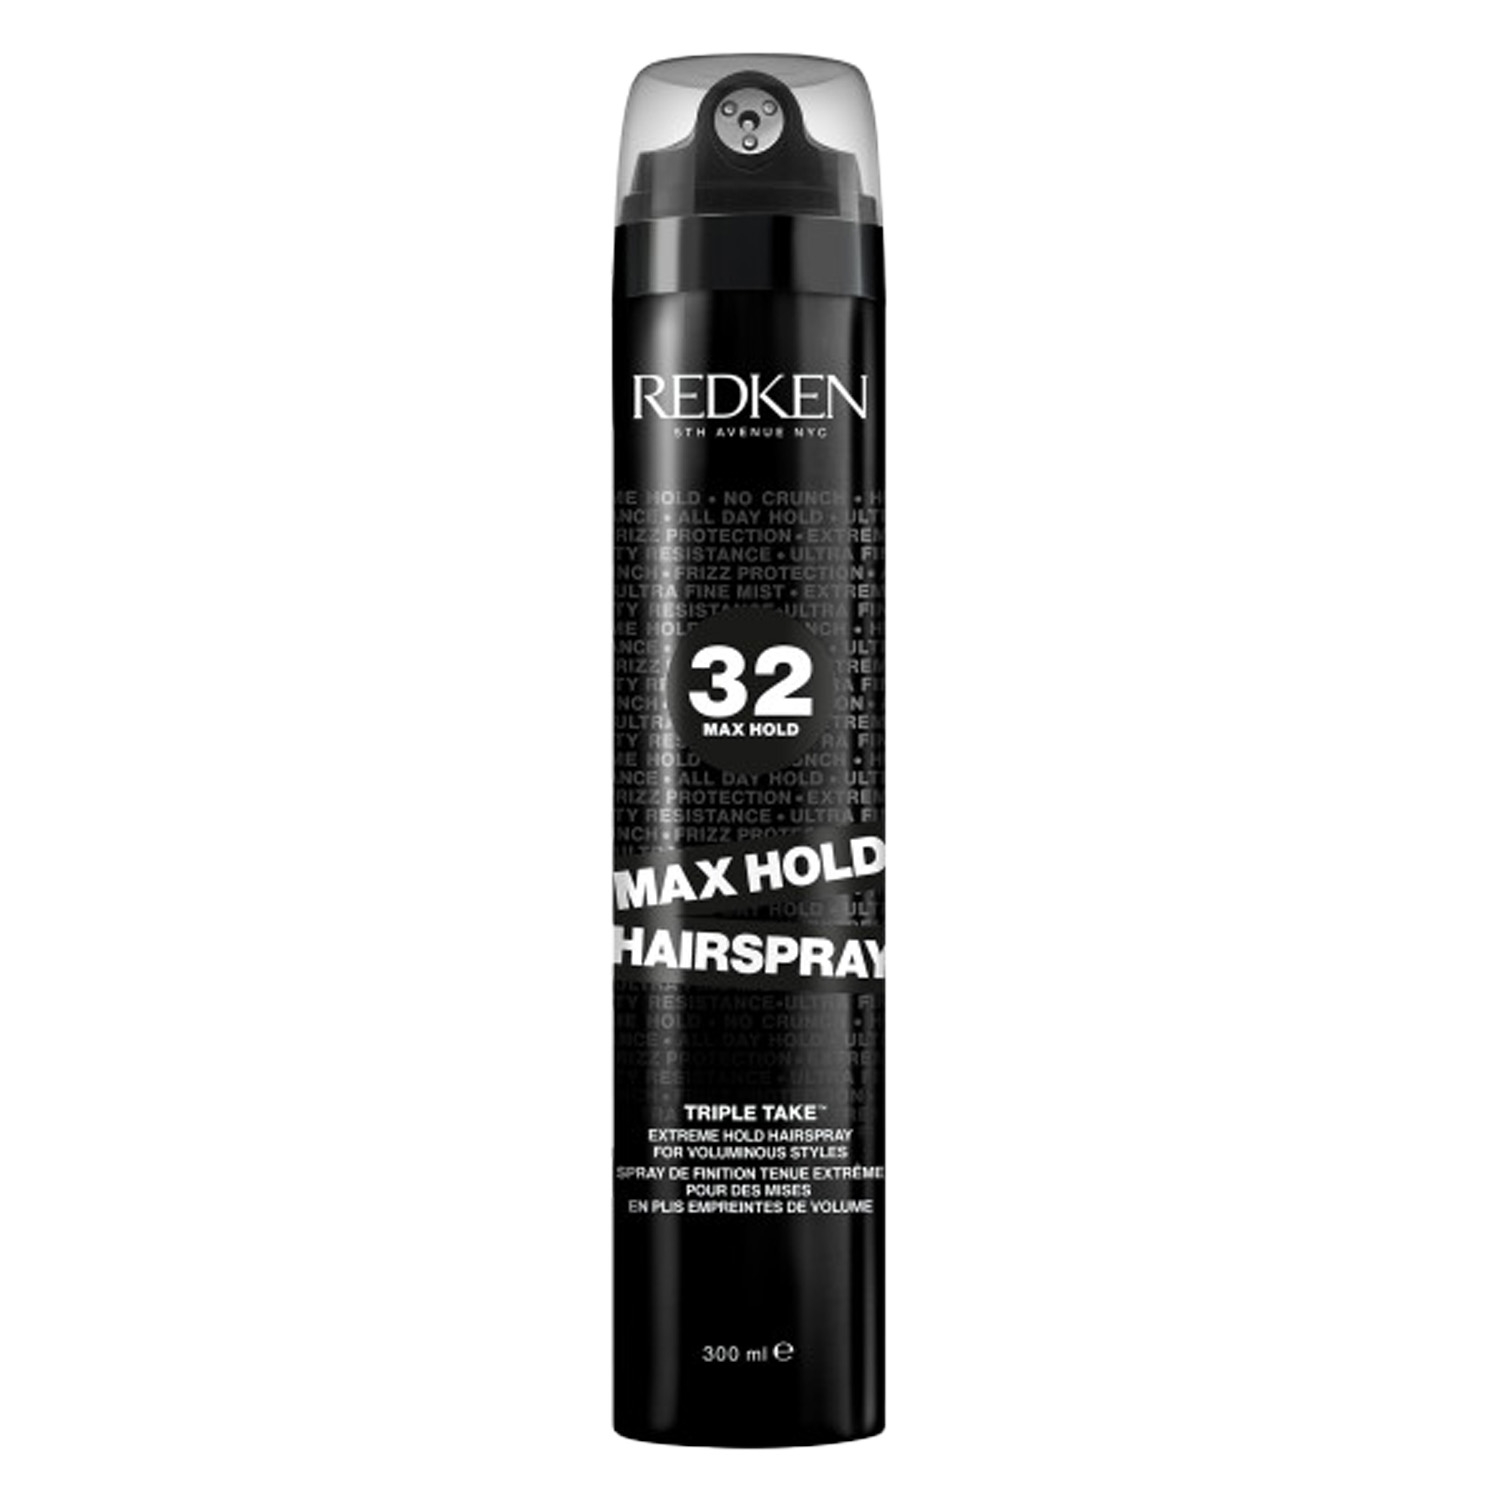 Produktbild von Redken Styling - Max Hold Hairspray